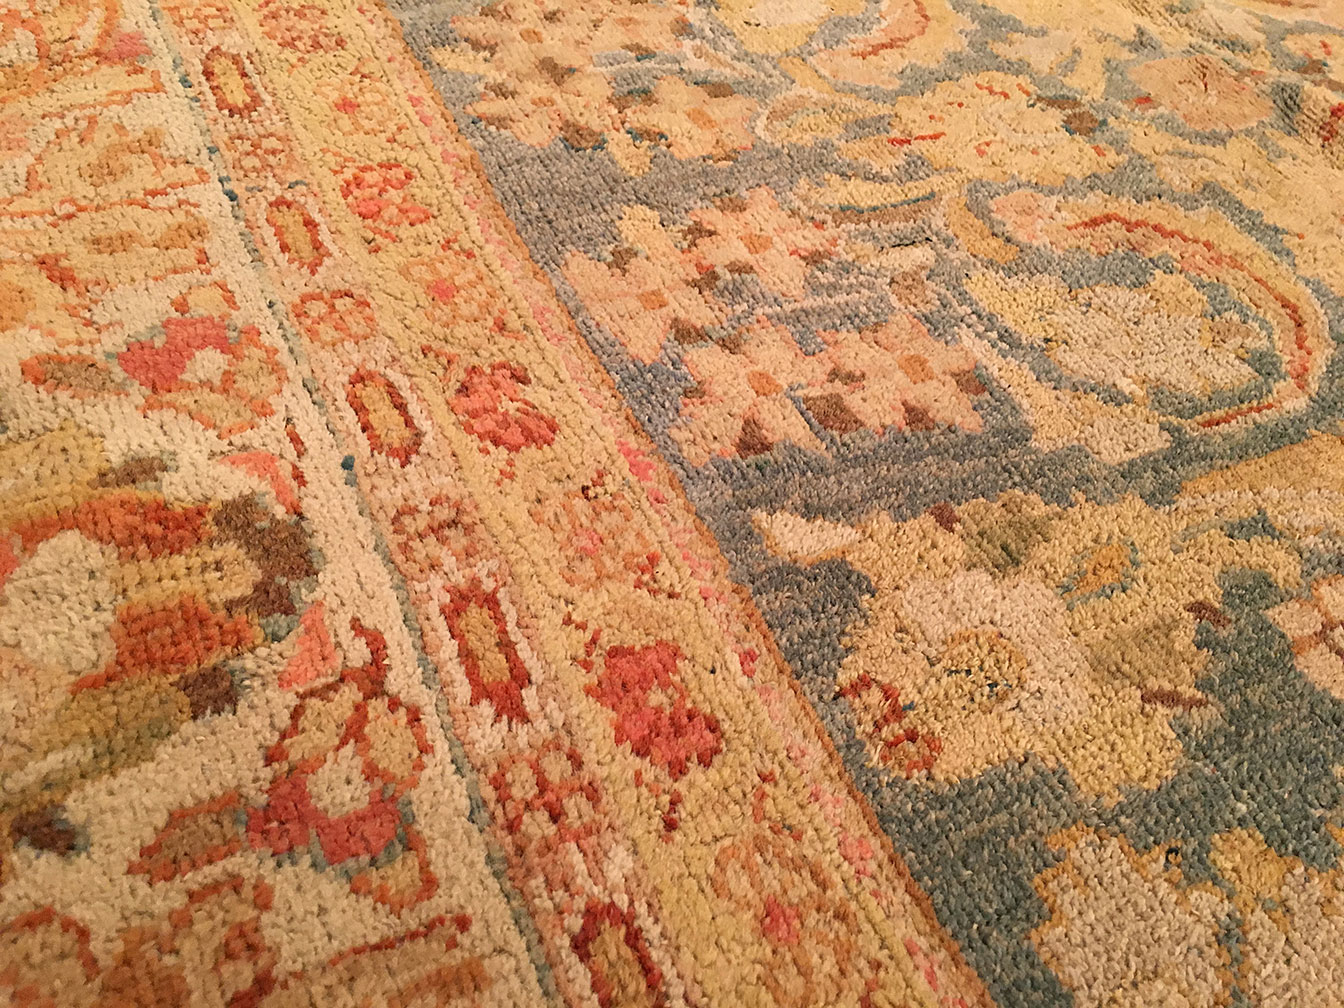 Antique sultan abad Carpet - # 52213